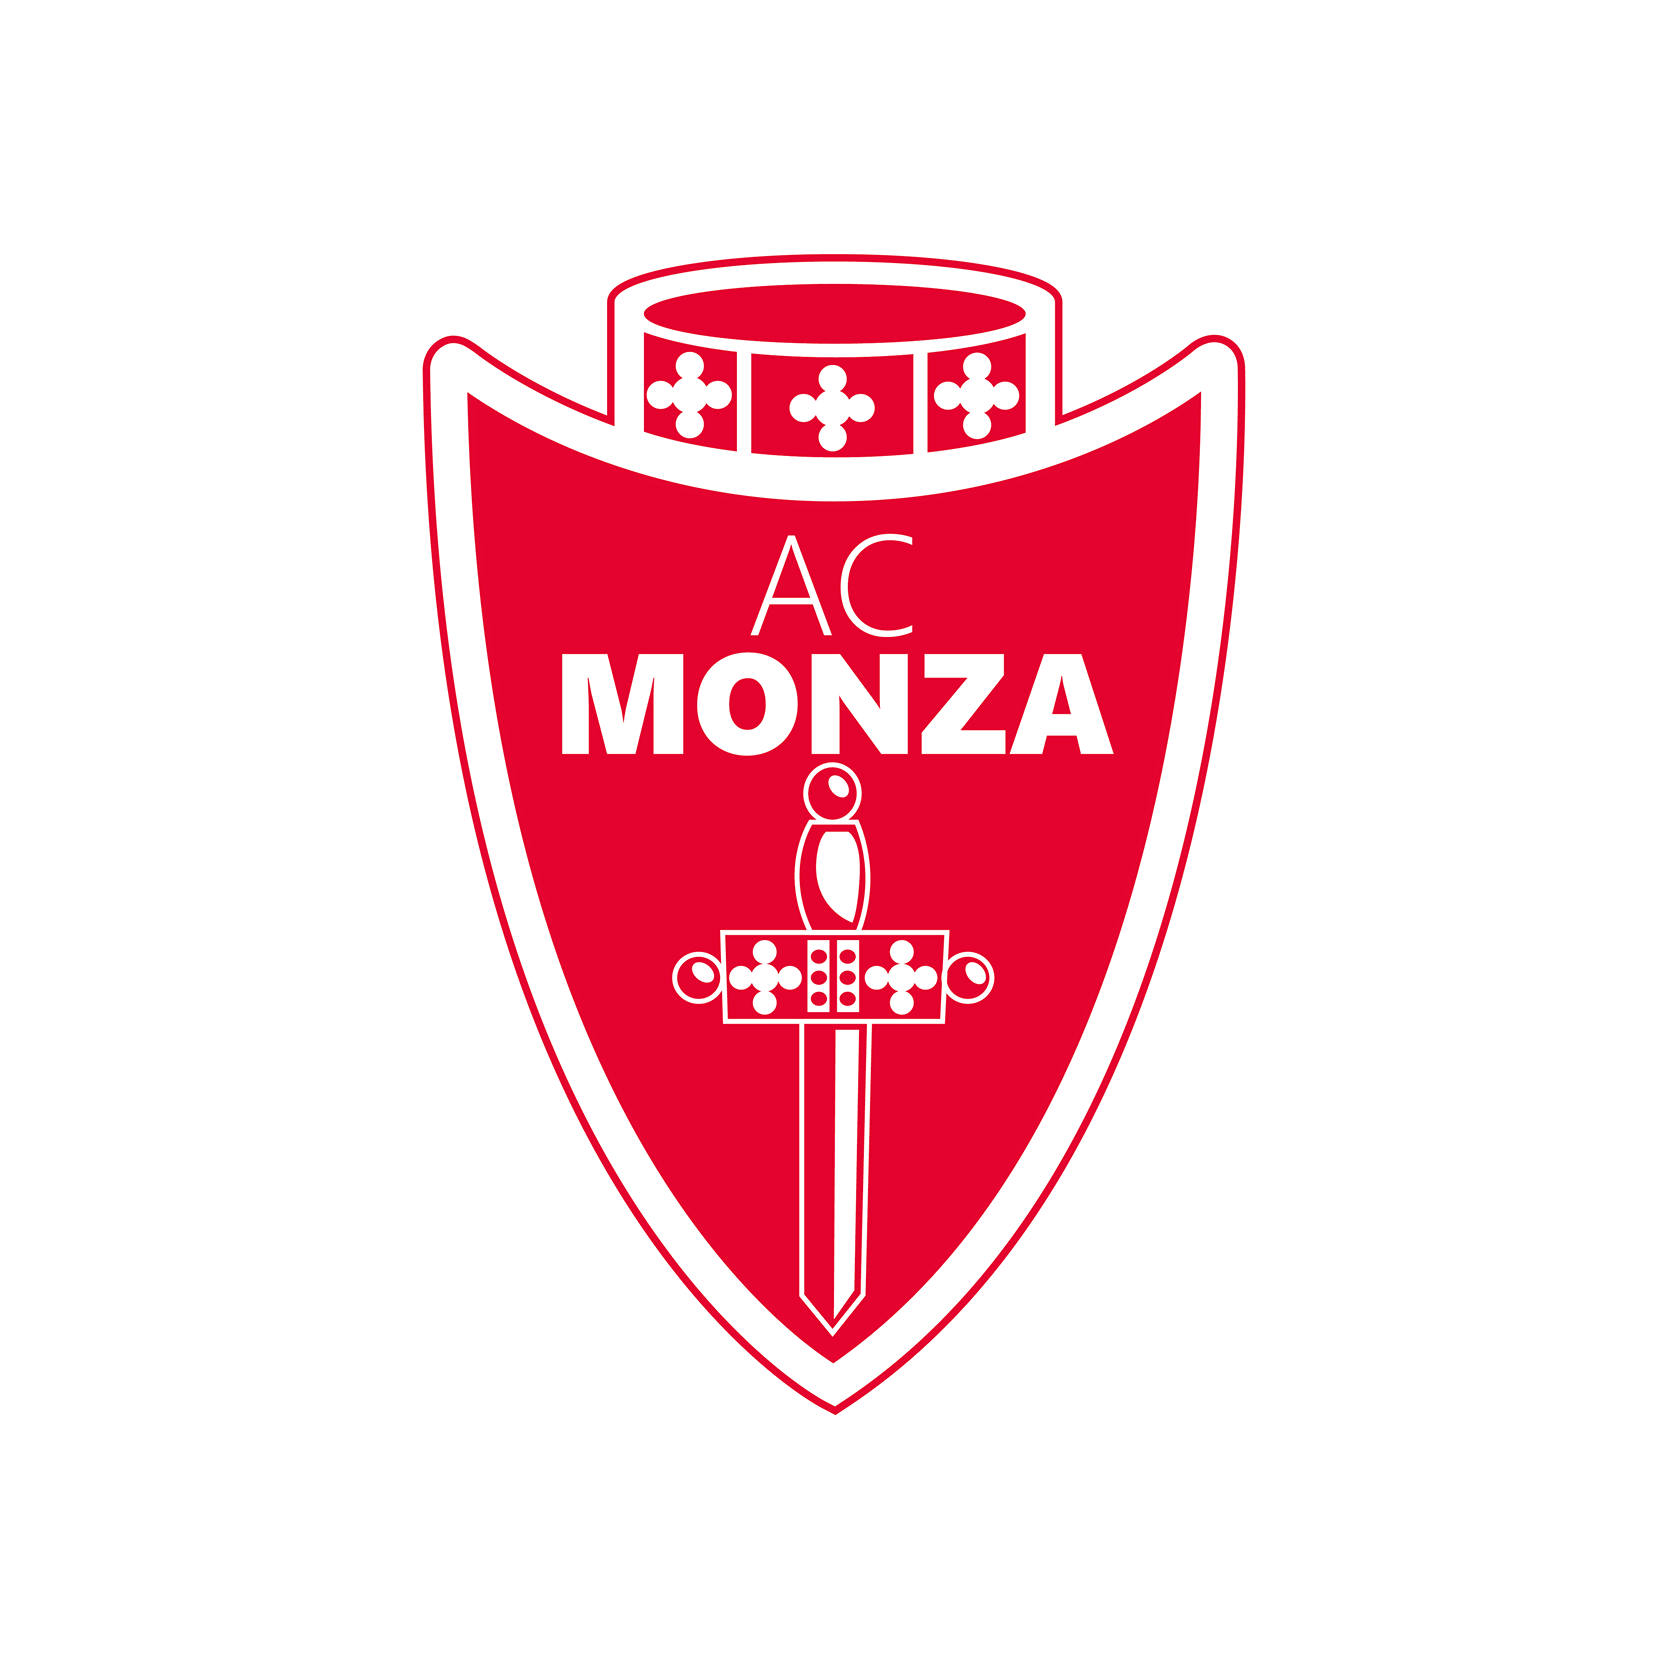 Serie B, troppi positivi nel Monza, l’Ats vieta la partenza per Benevento e la Lega rinvia la partita 